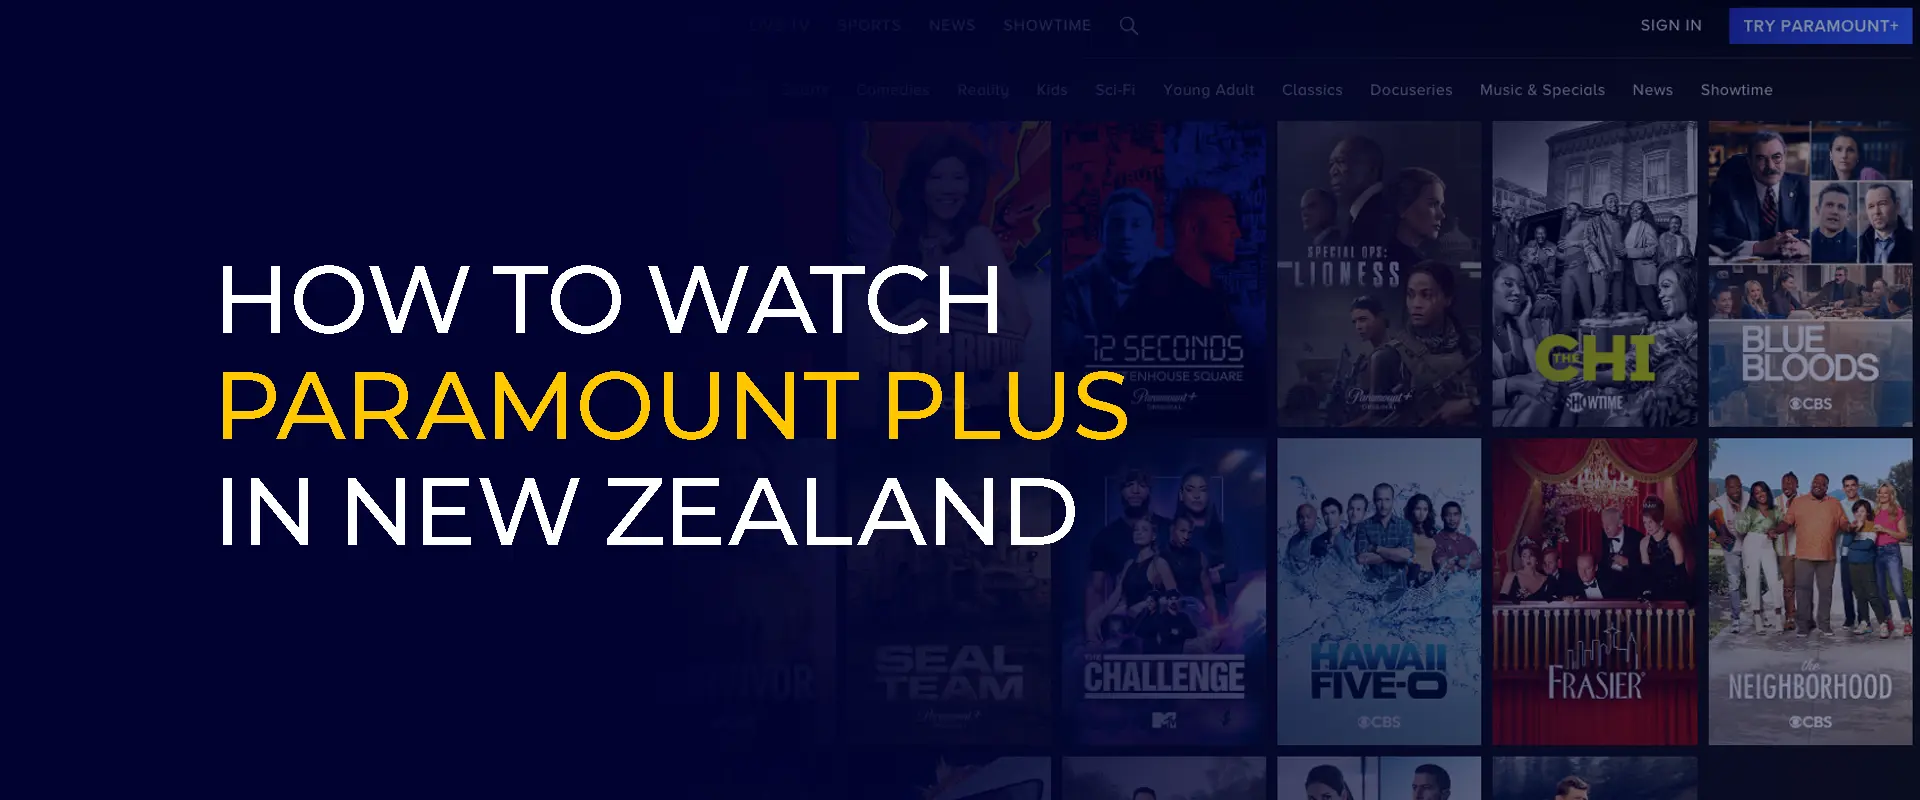 Comment regarder Paramount Plus en Nouvelle-Zélande